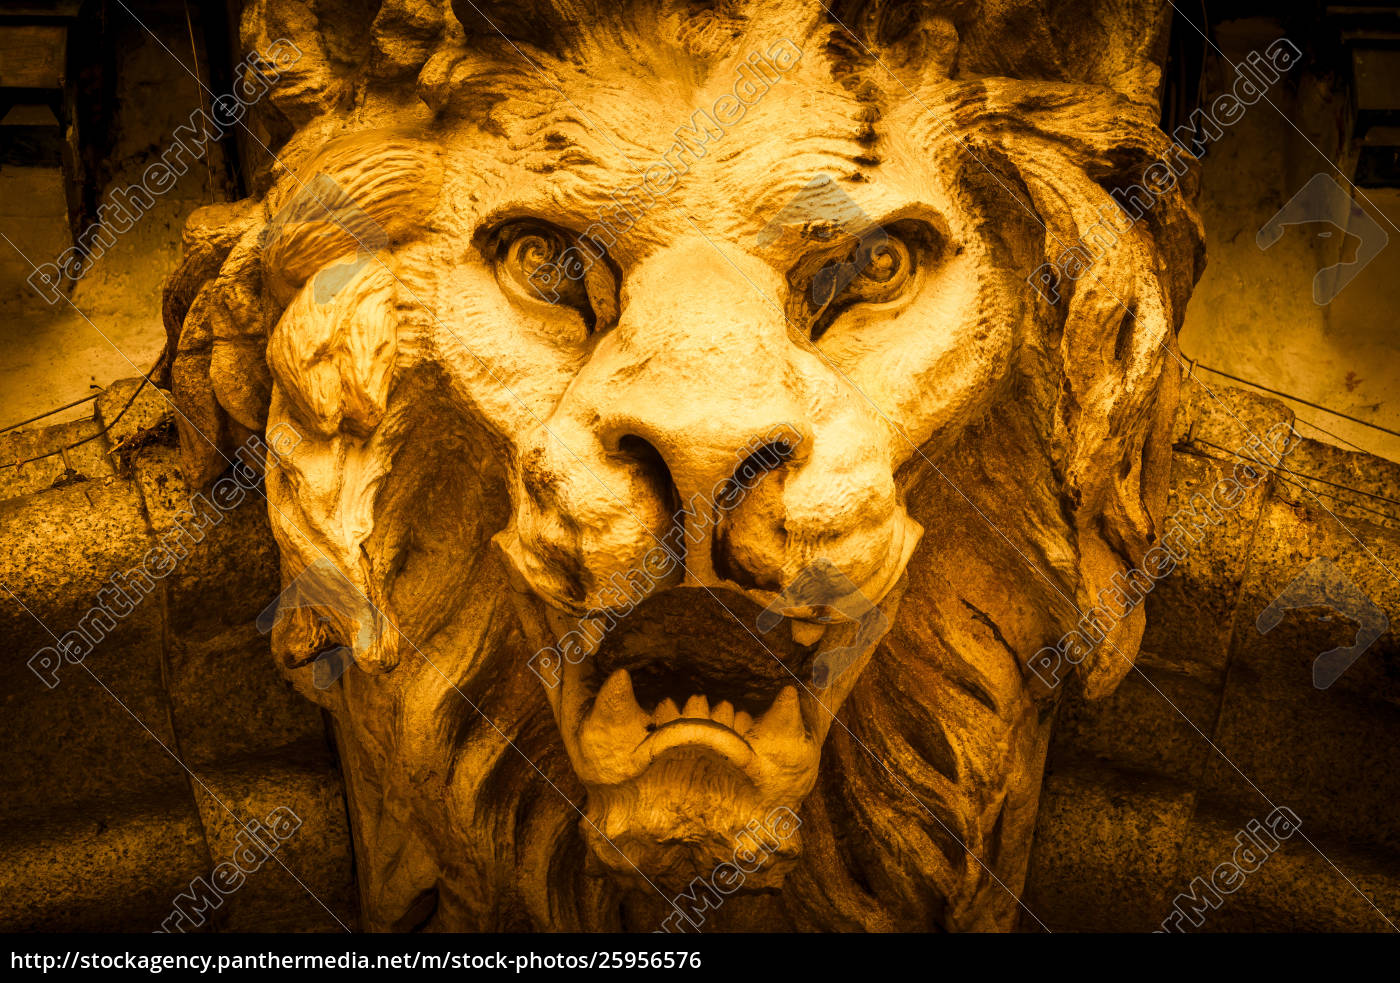 free image of roaring lion